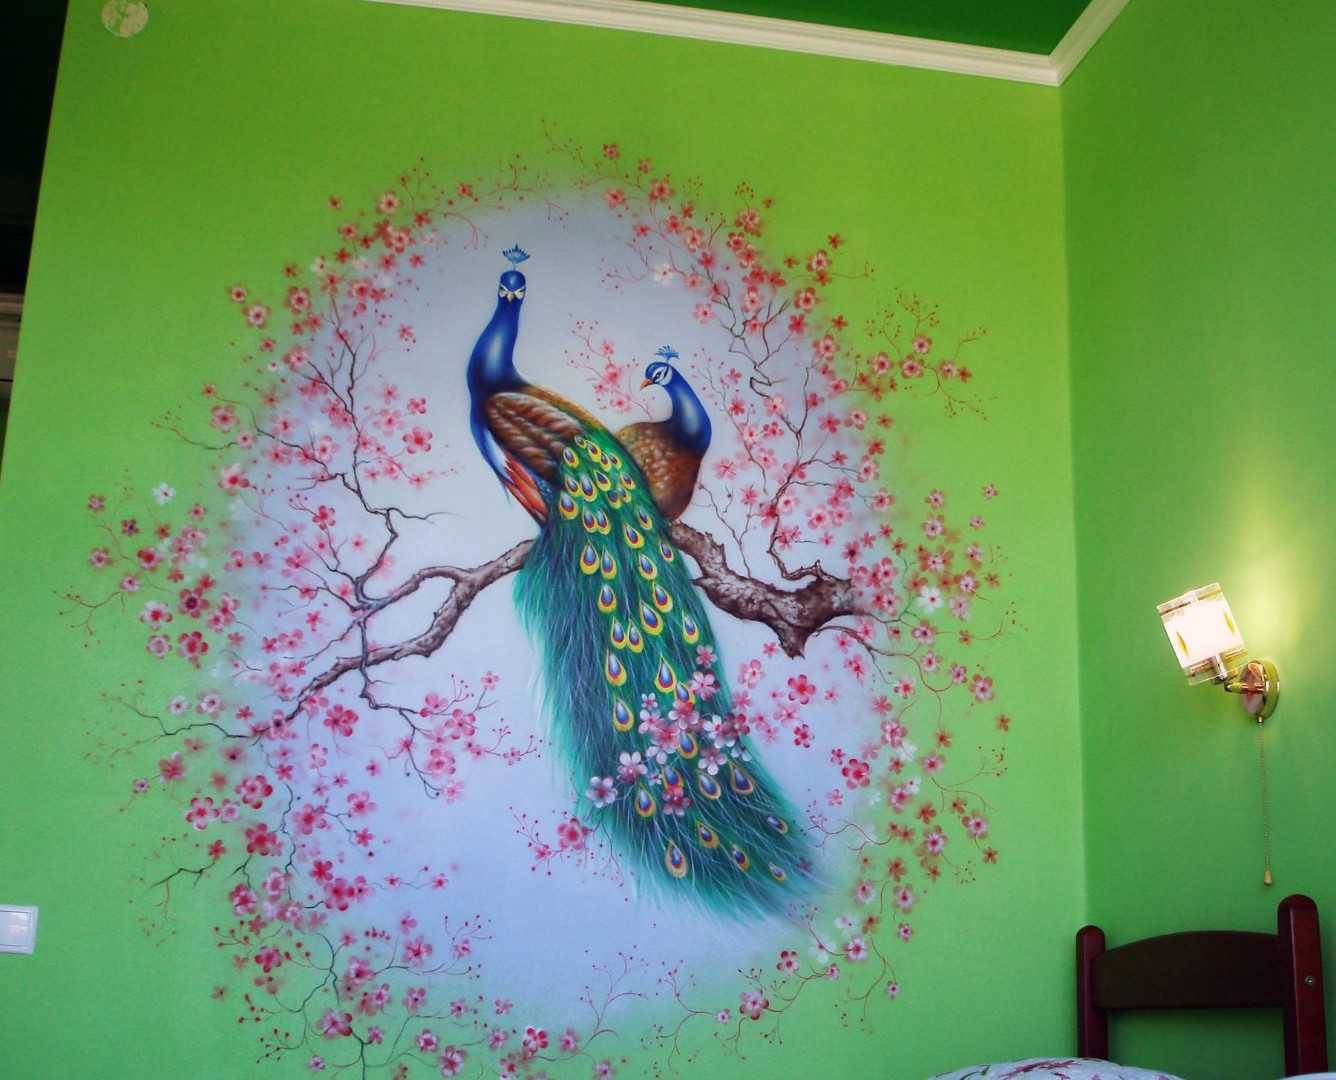 Художественная роспись стен в интерьере: декоративная ручная живопись - 34 фото